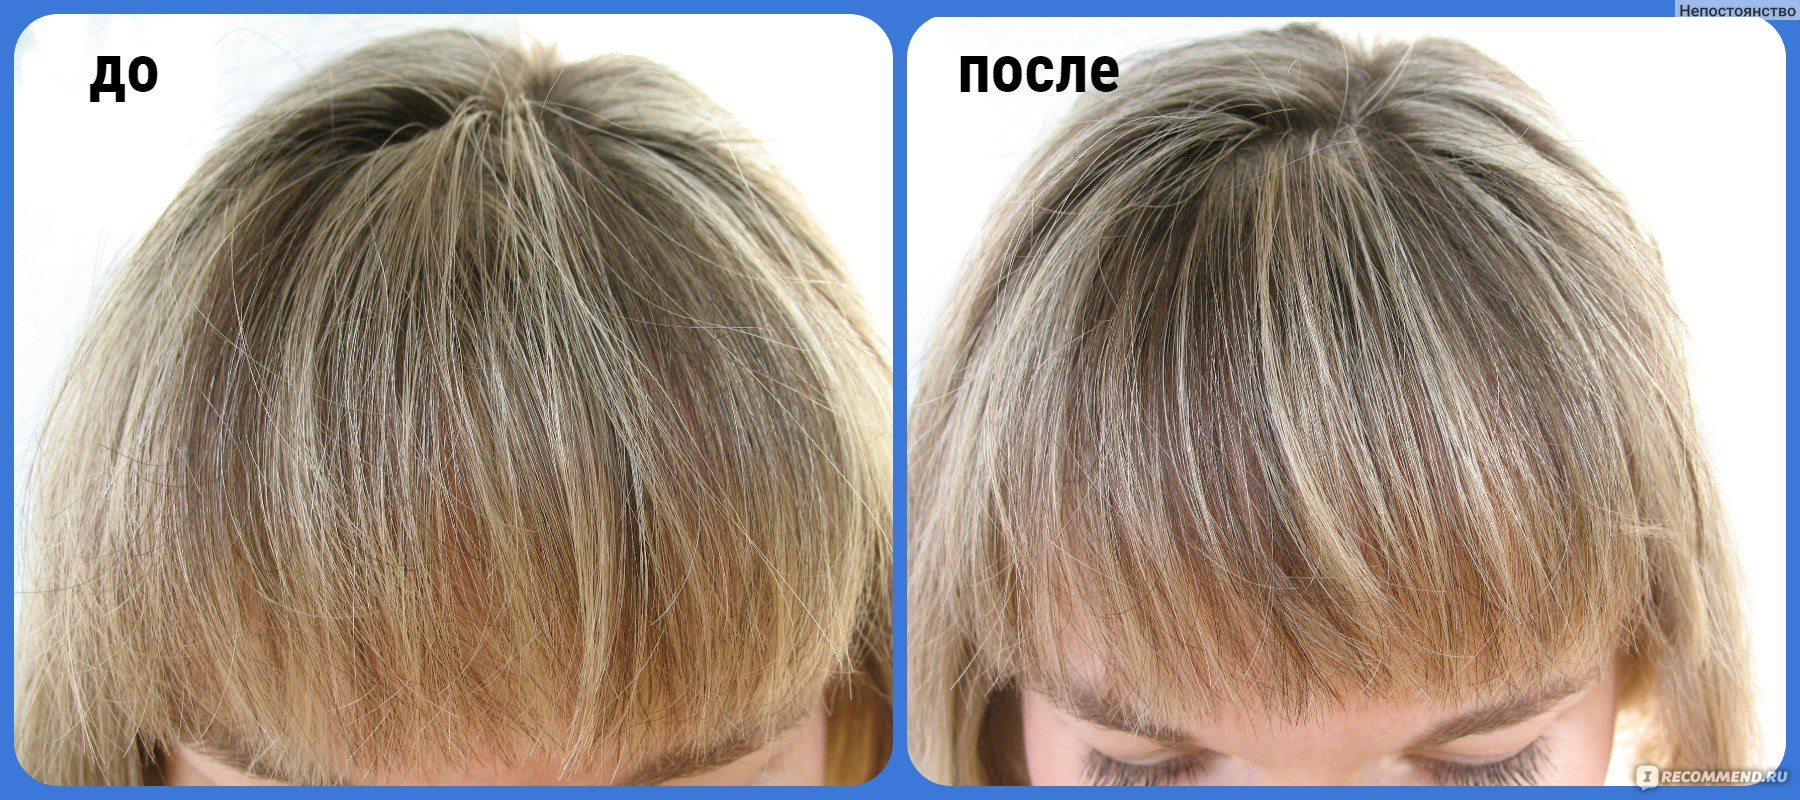 Пудра для объема волос Эстель отзывы с фото до и после применения